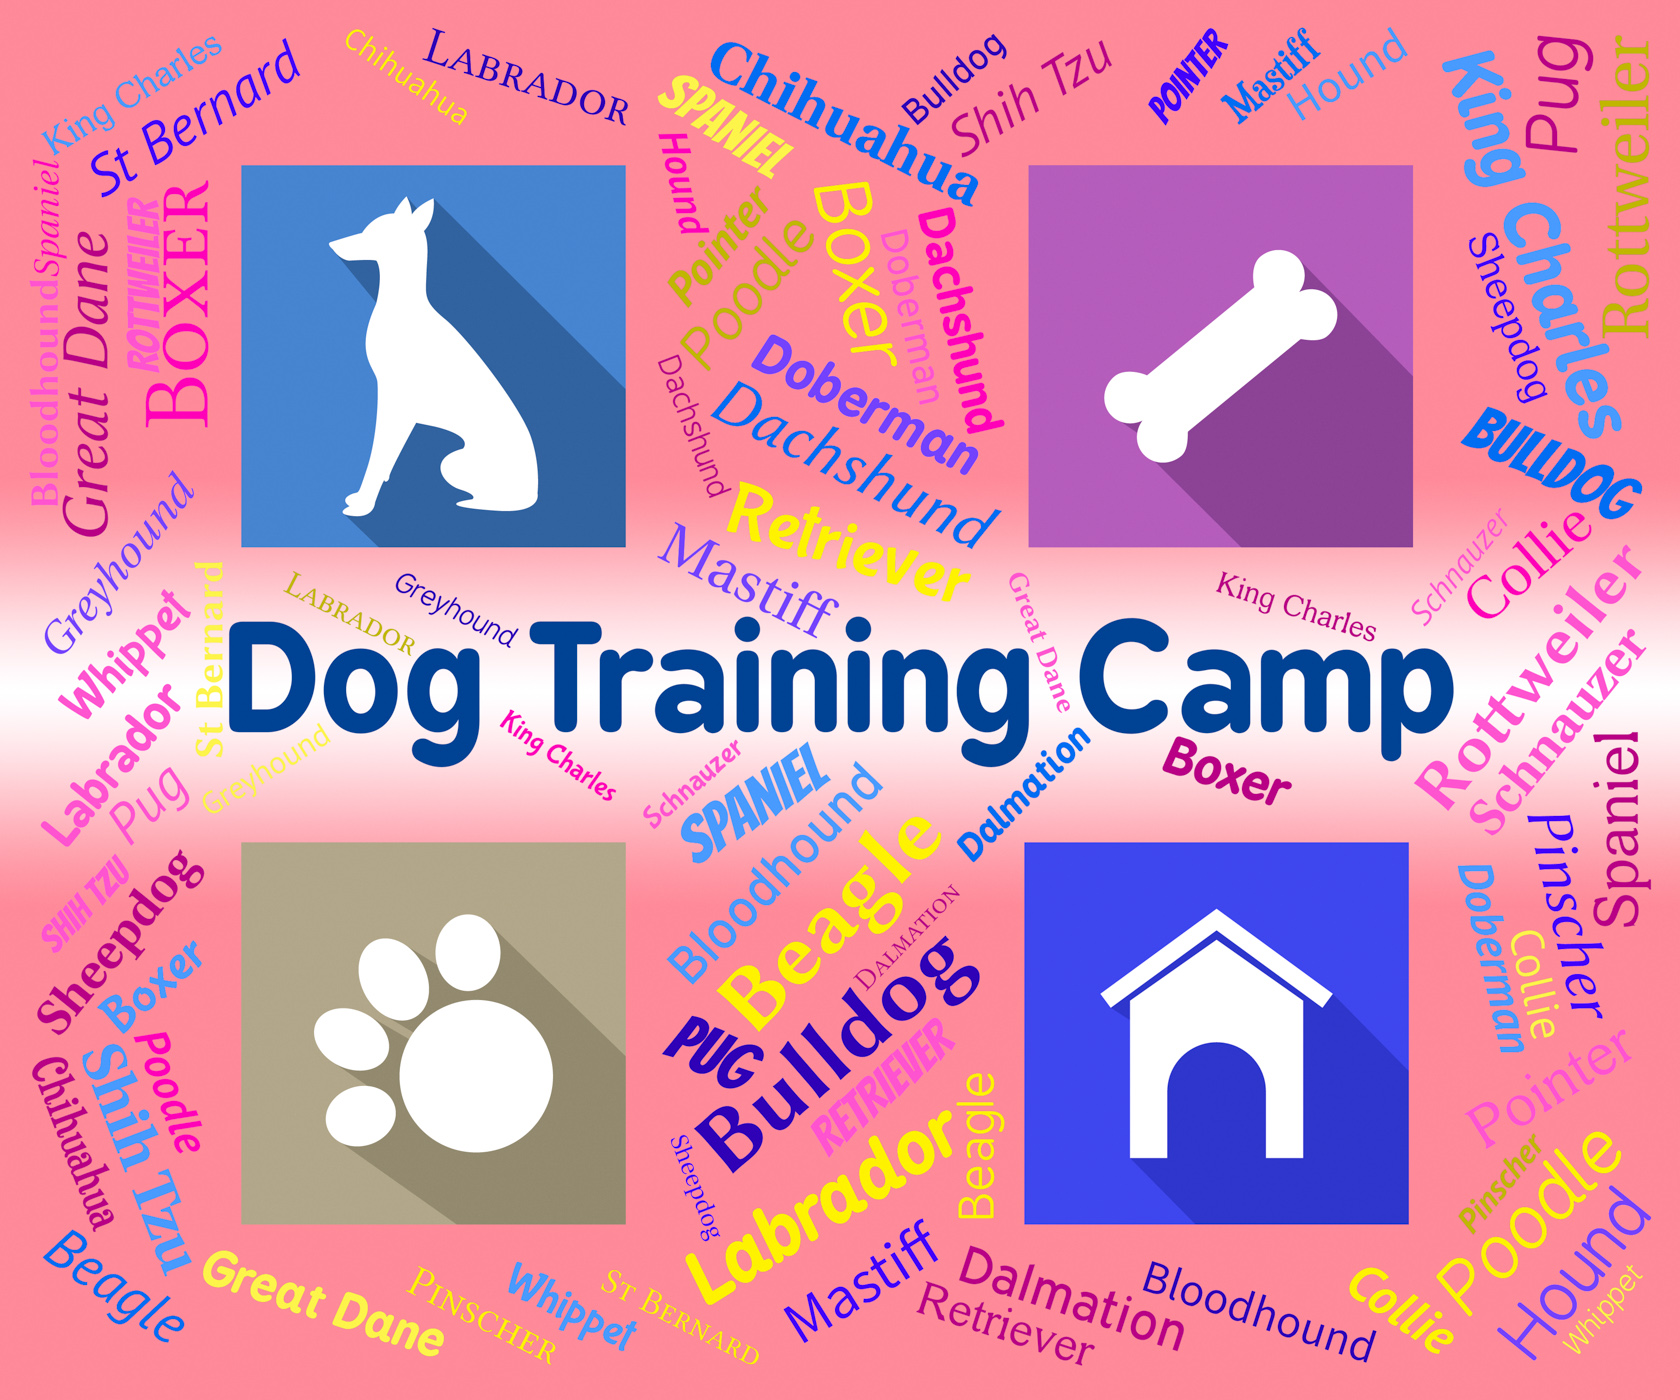 Dog training camp indicates group trained and coaching photo